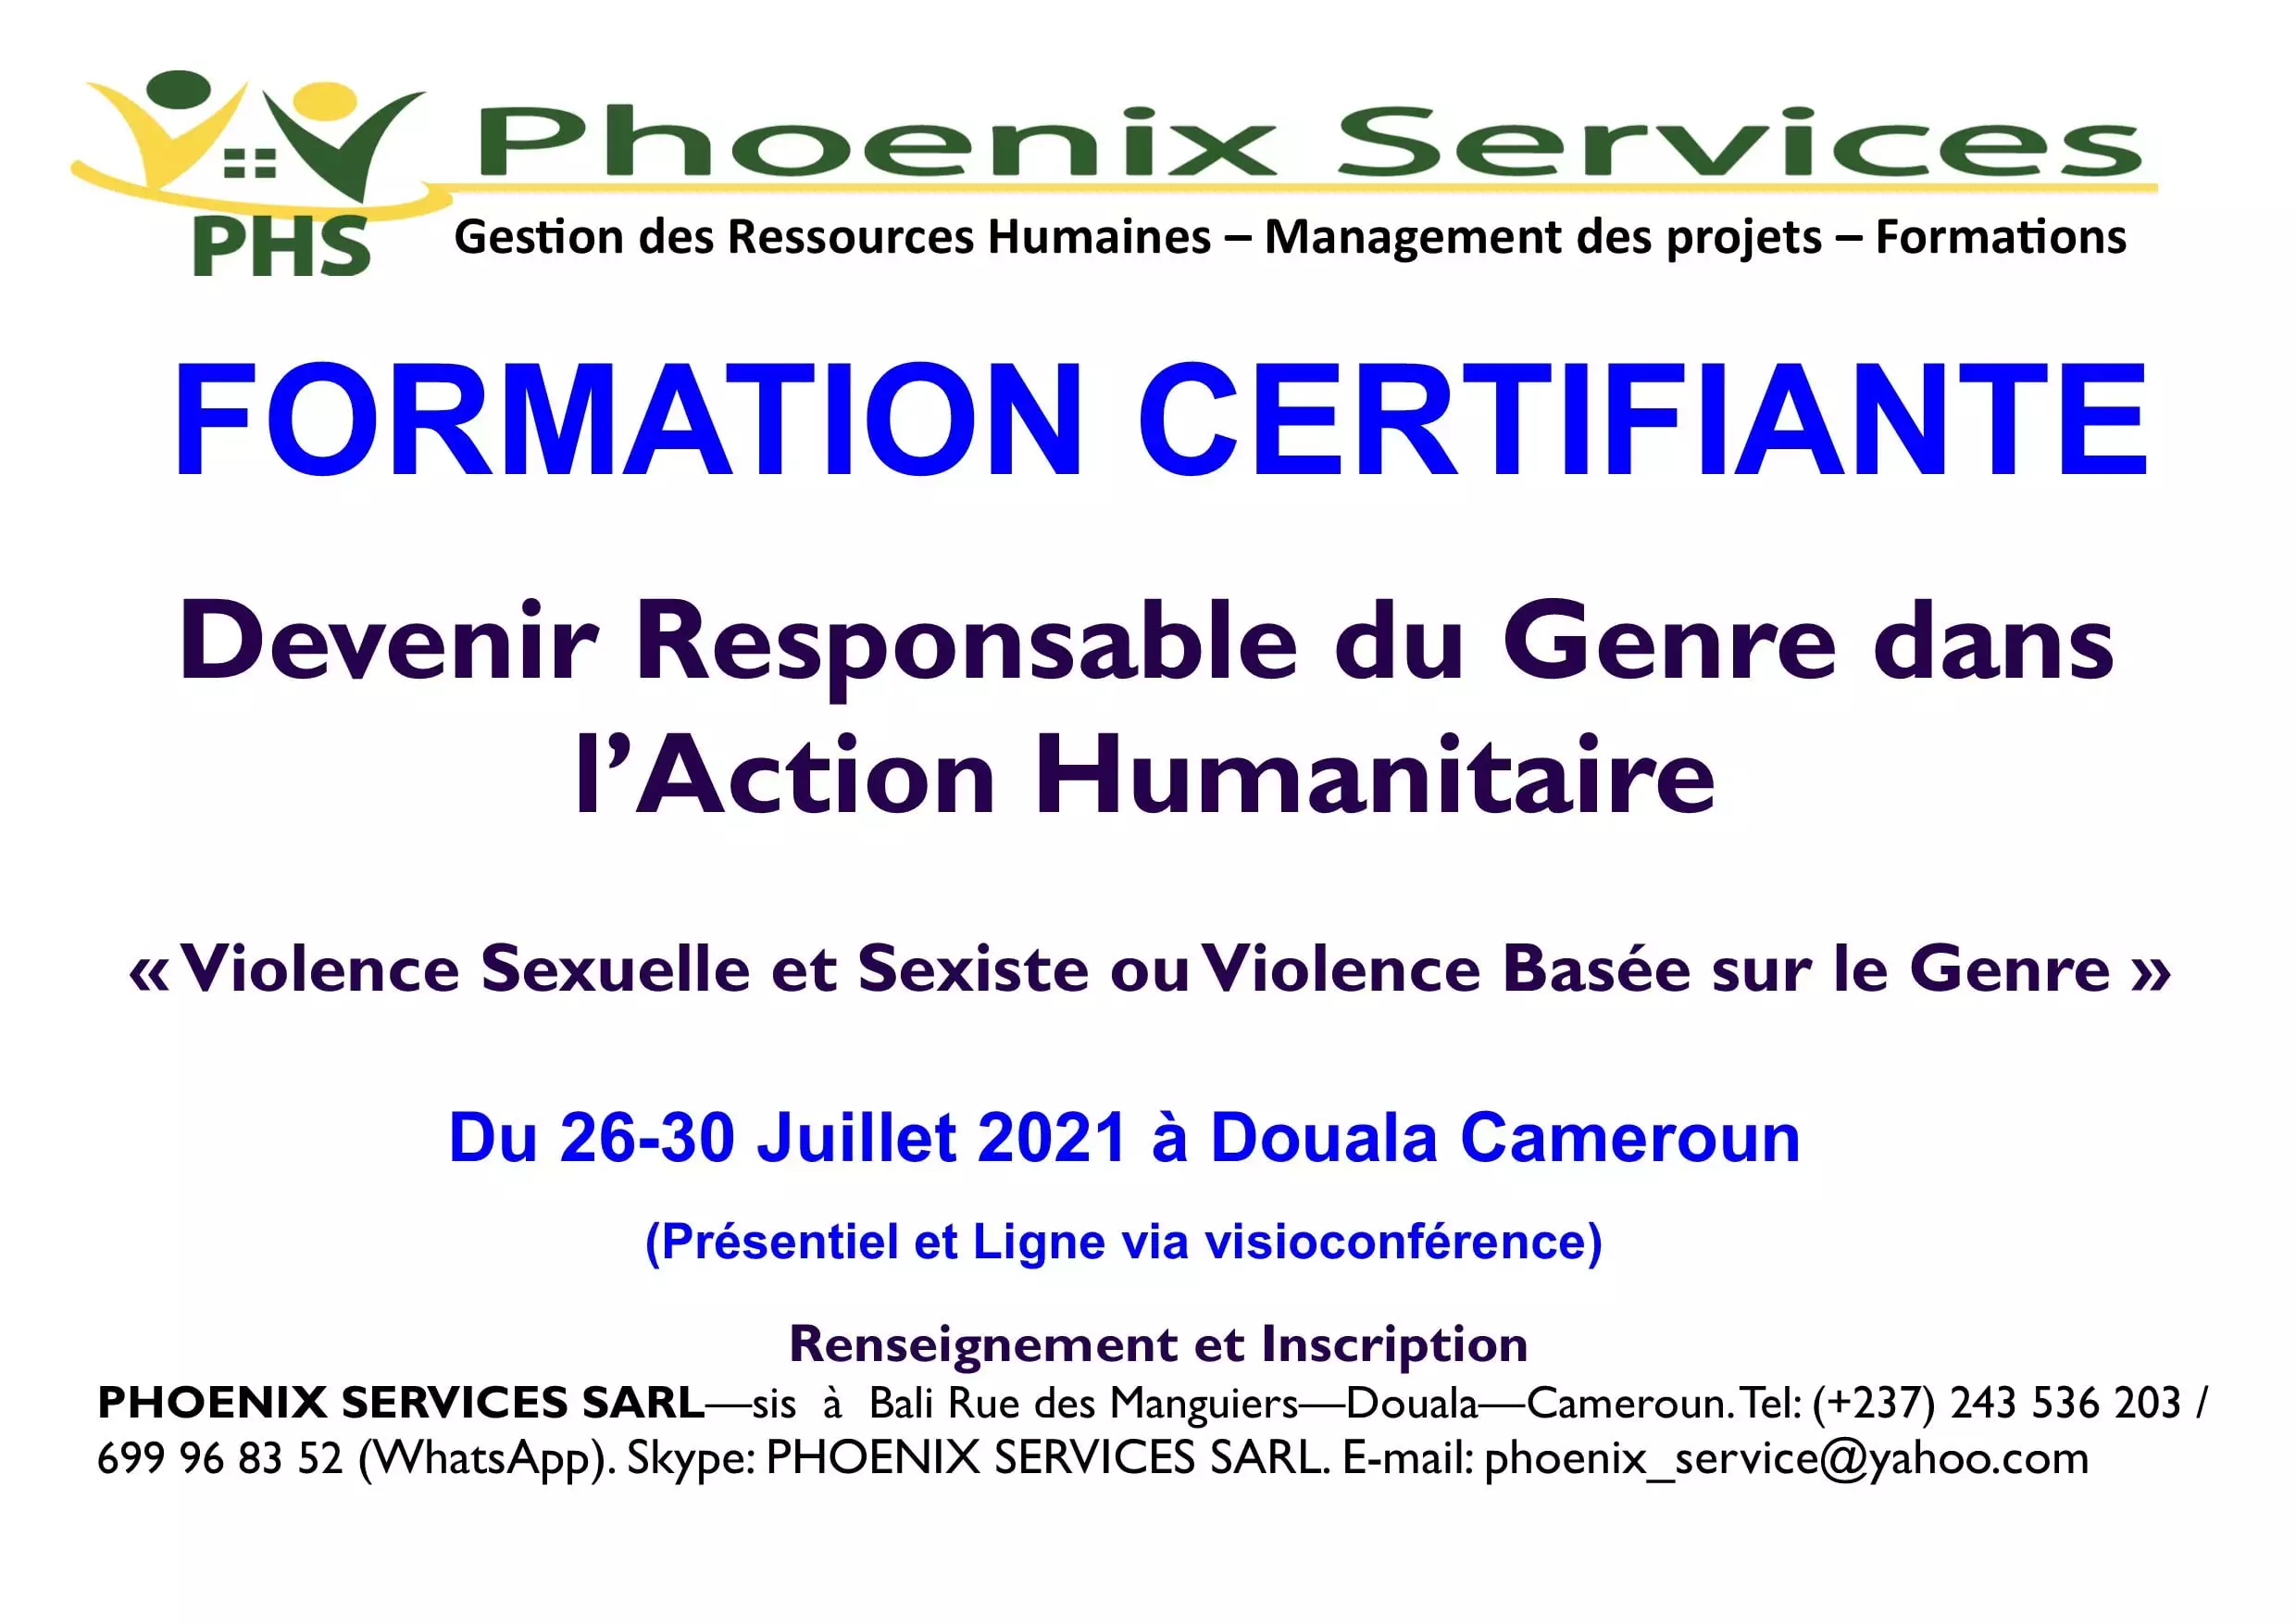 Formation Certifiante: Devenir Responsable du Genre dans l’Action Humanitaire